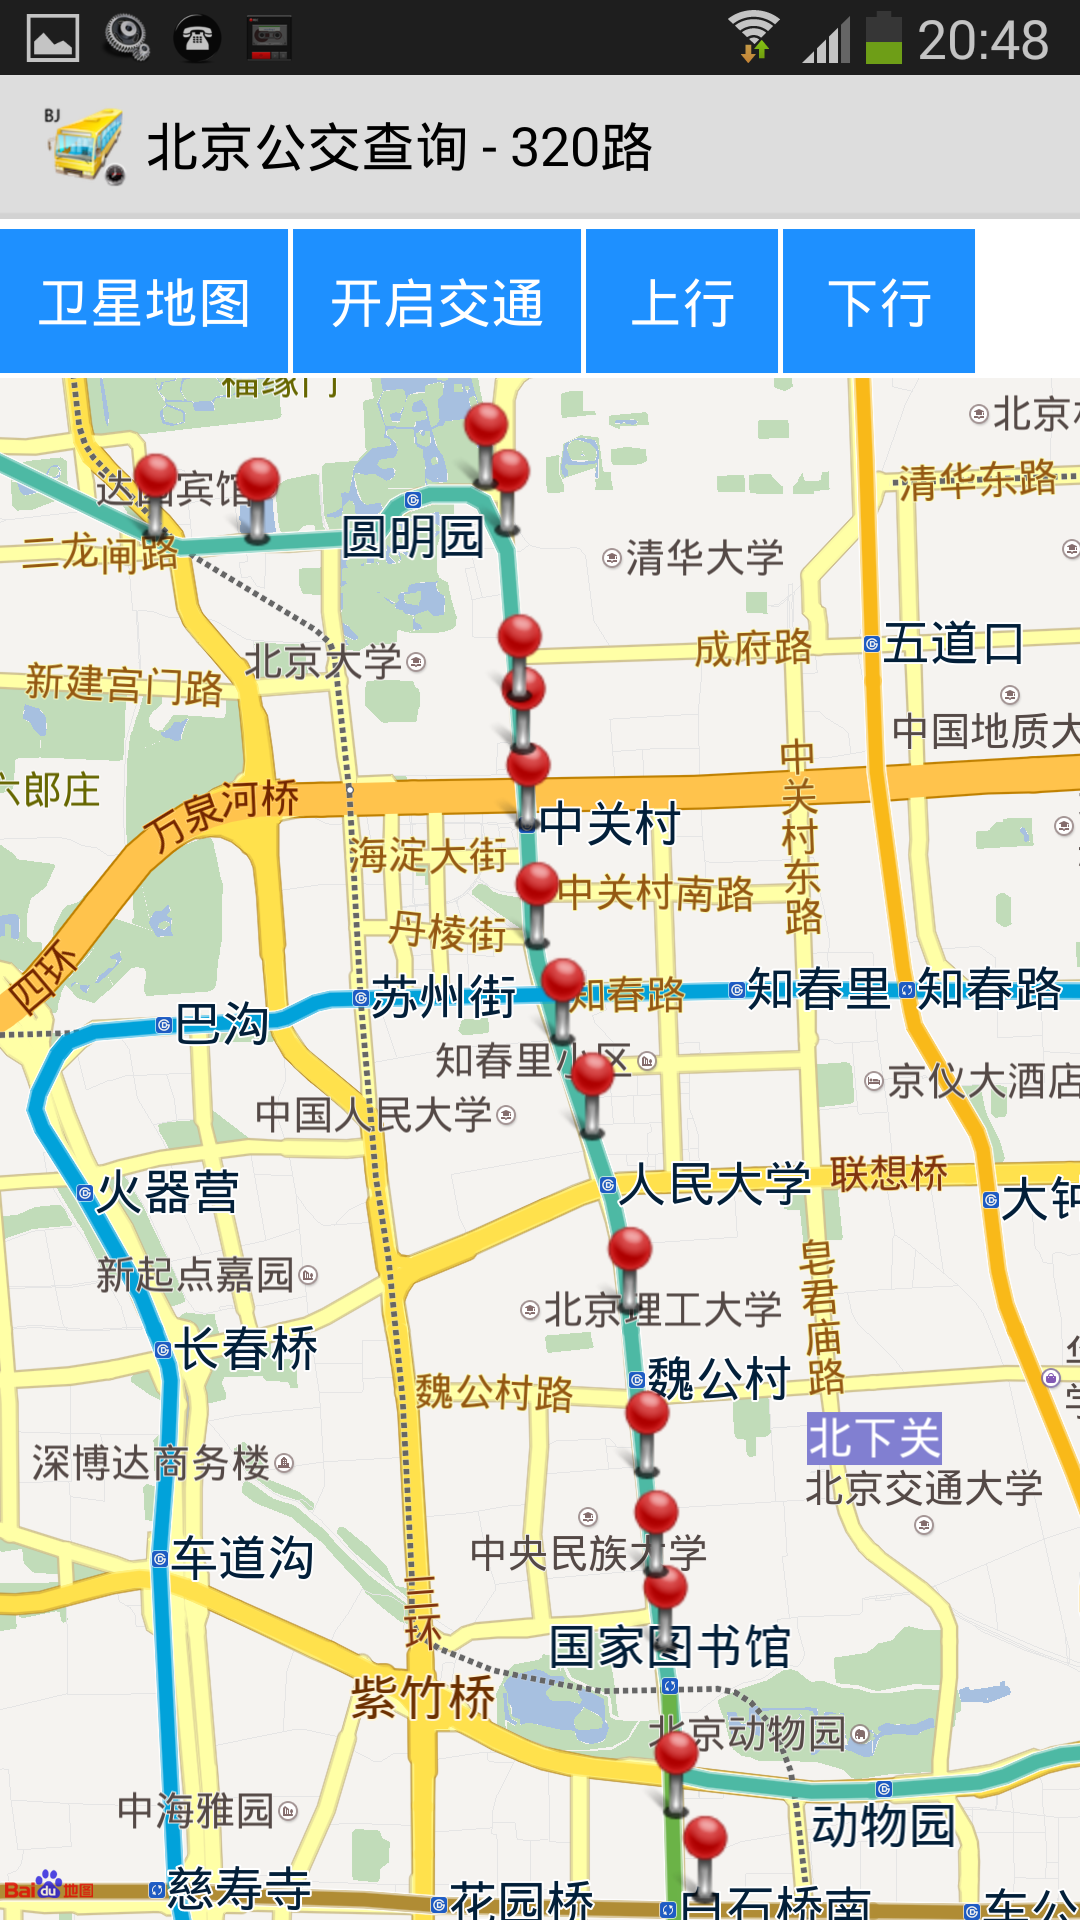 上海地铁线路图及票价查询1、2、3、4、5、6、7、8、9、10、11号－吾爱论坛,最好的旅游论坛